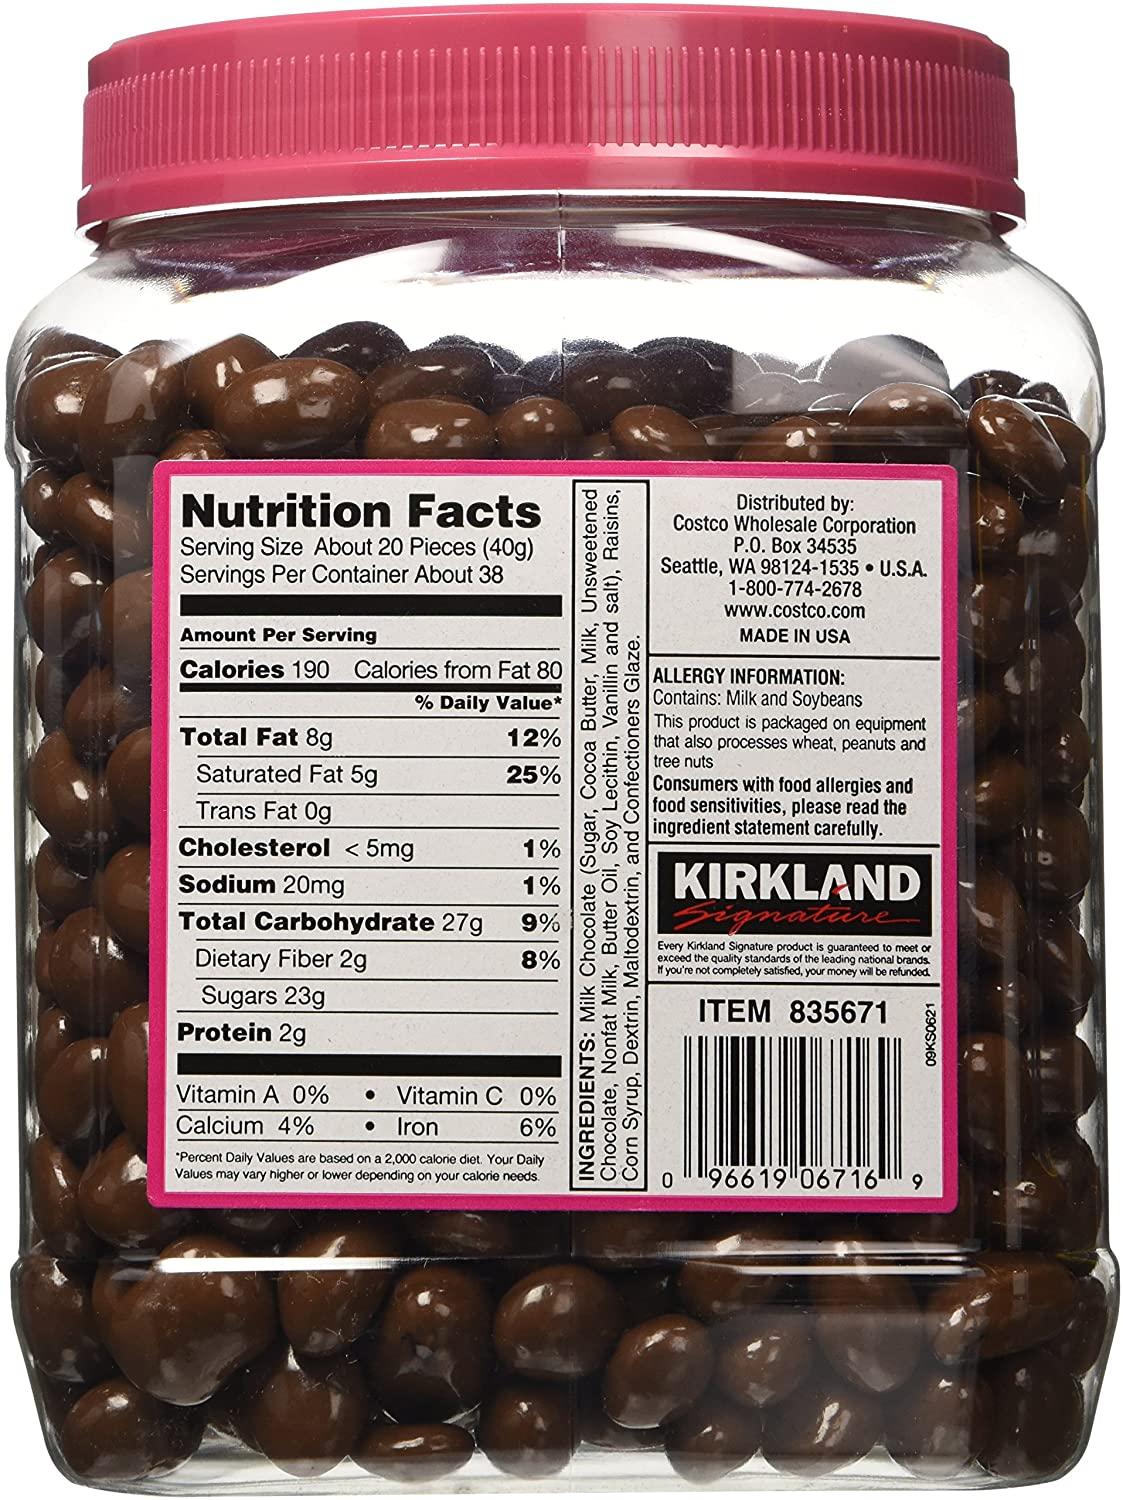 Kirkland Signature Milk Chocolate Crepes — Snackathon Foods